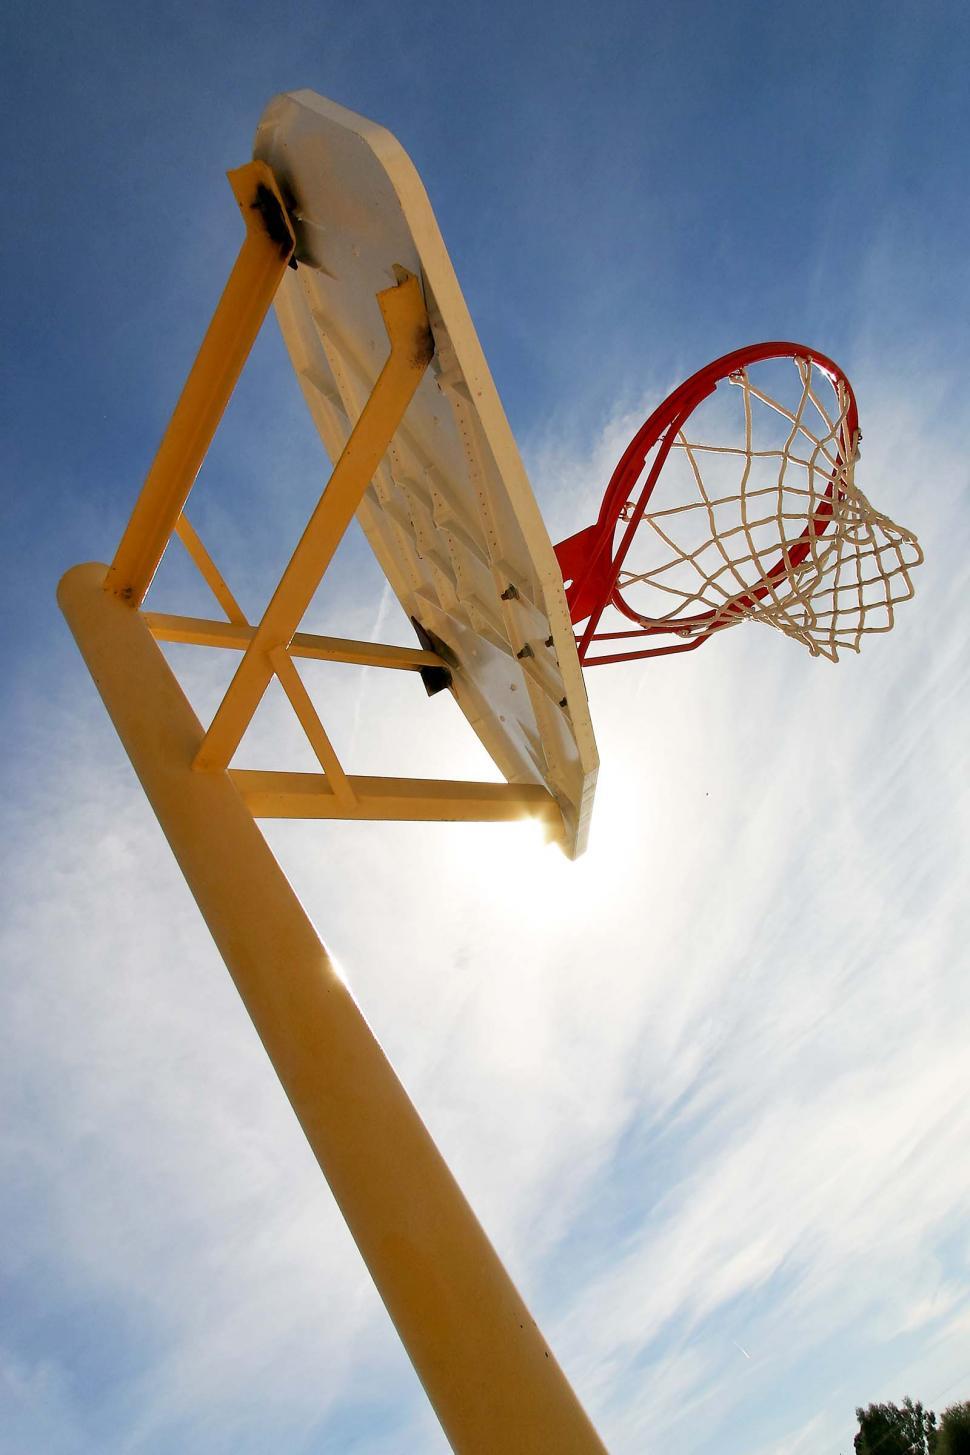 Free Image of Basketball Hoop Soaring Against Blue Sky 